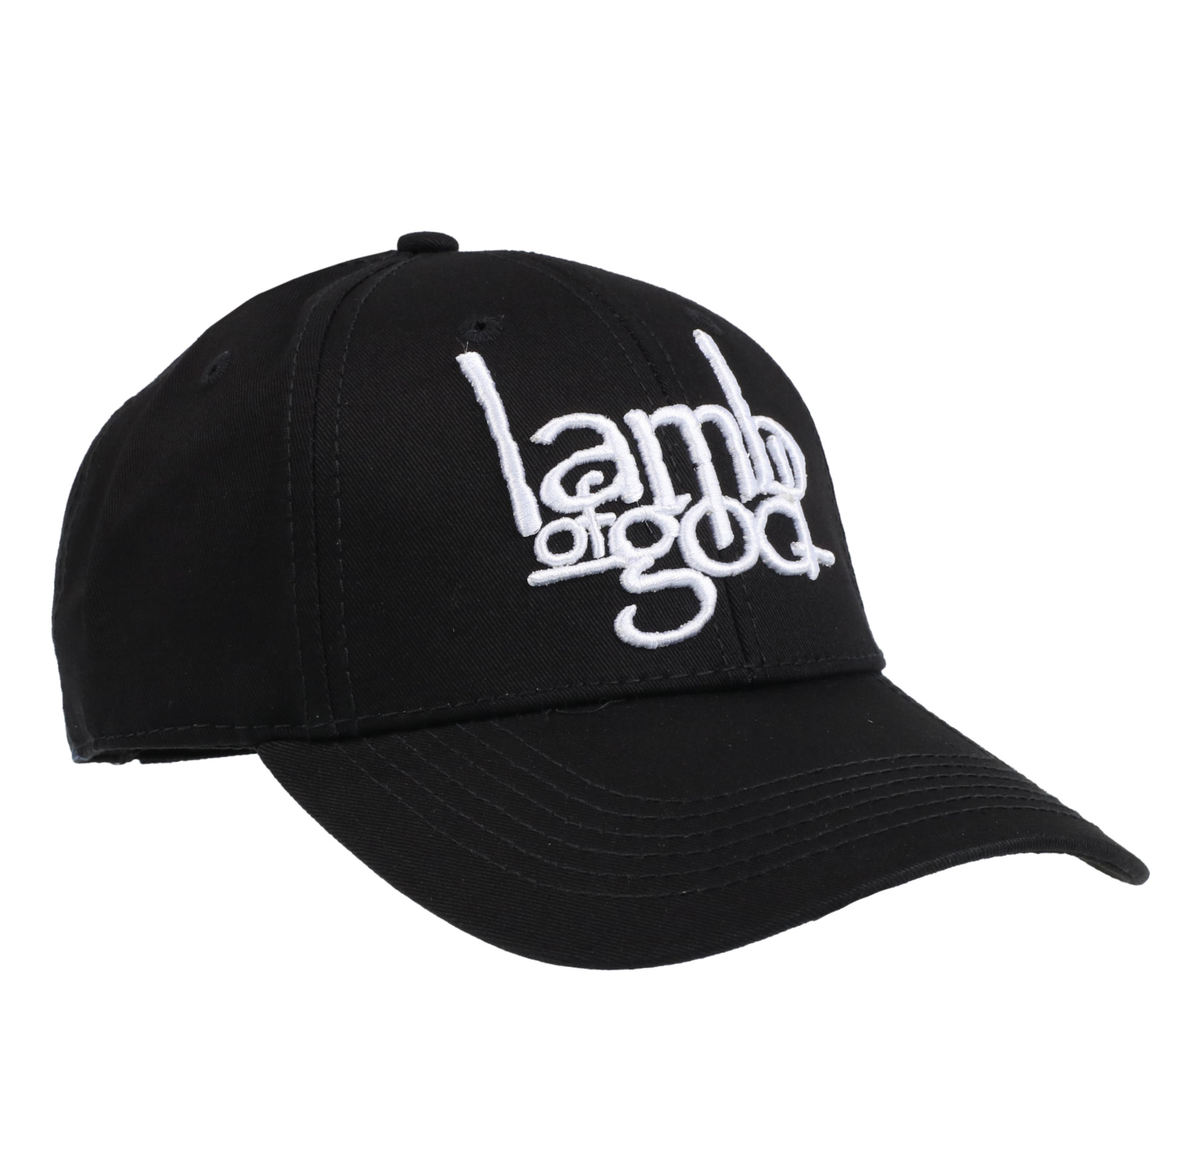 Lamb of God - Lamb Of God Logo